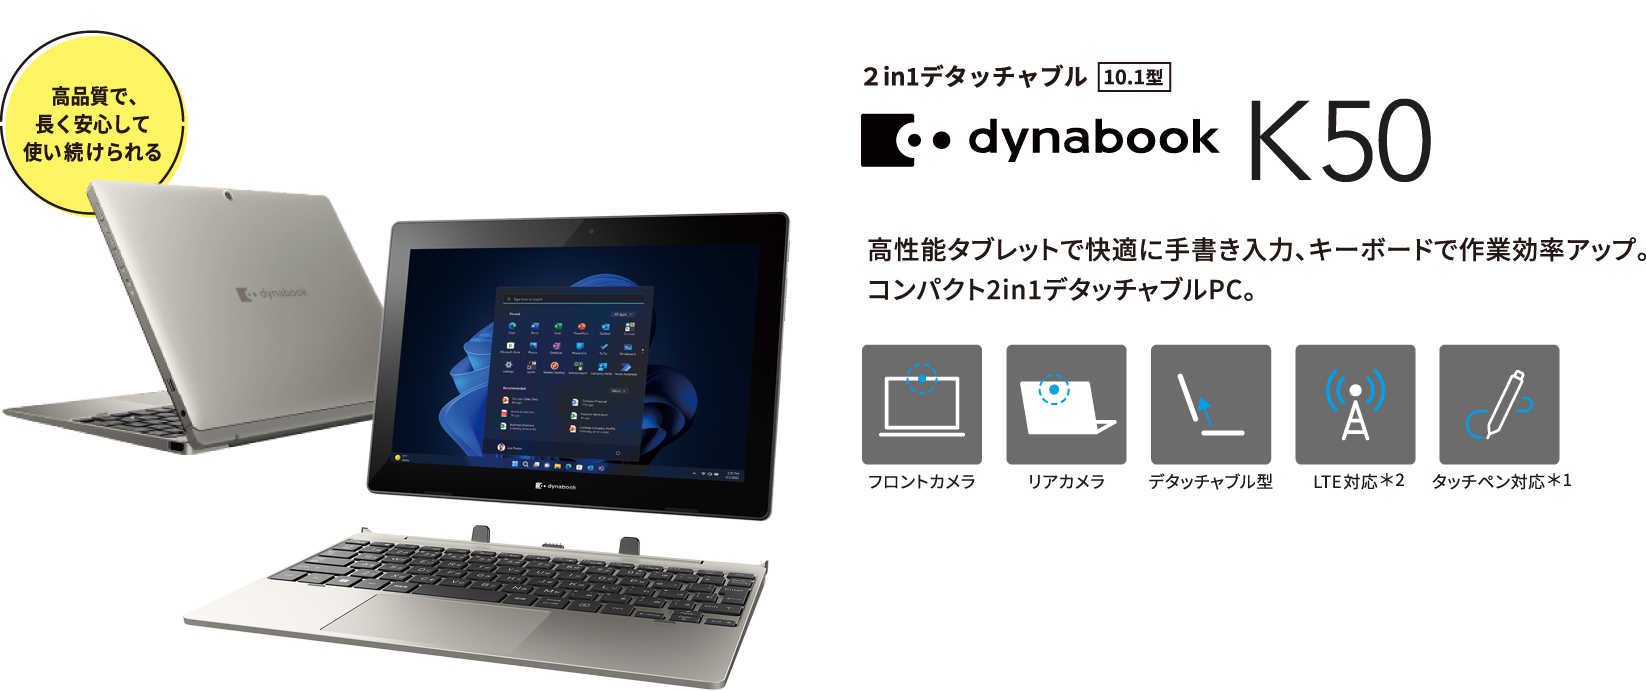 dynabook K50 高性能タブレットで快適に手書き入力、キーボードで作業効率アップ。コンパクト2in1デタッチャブルPC。